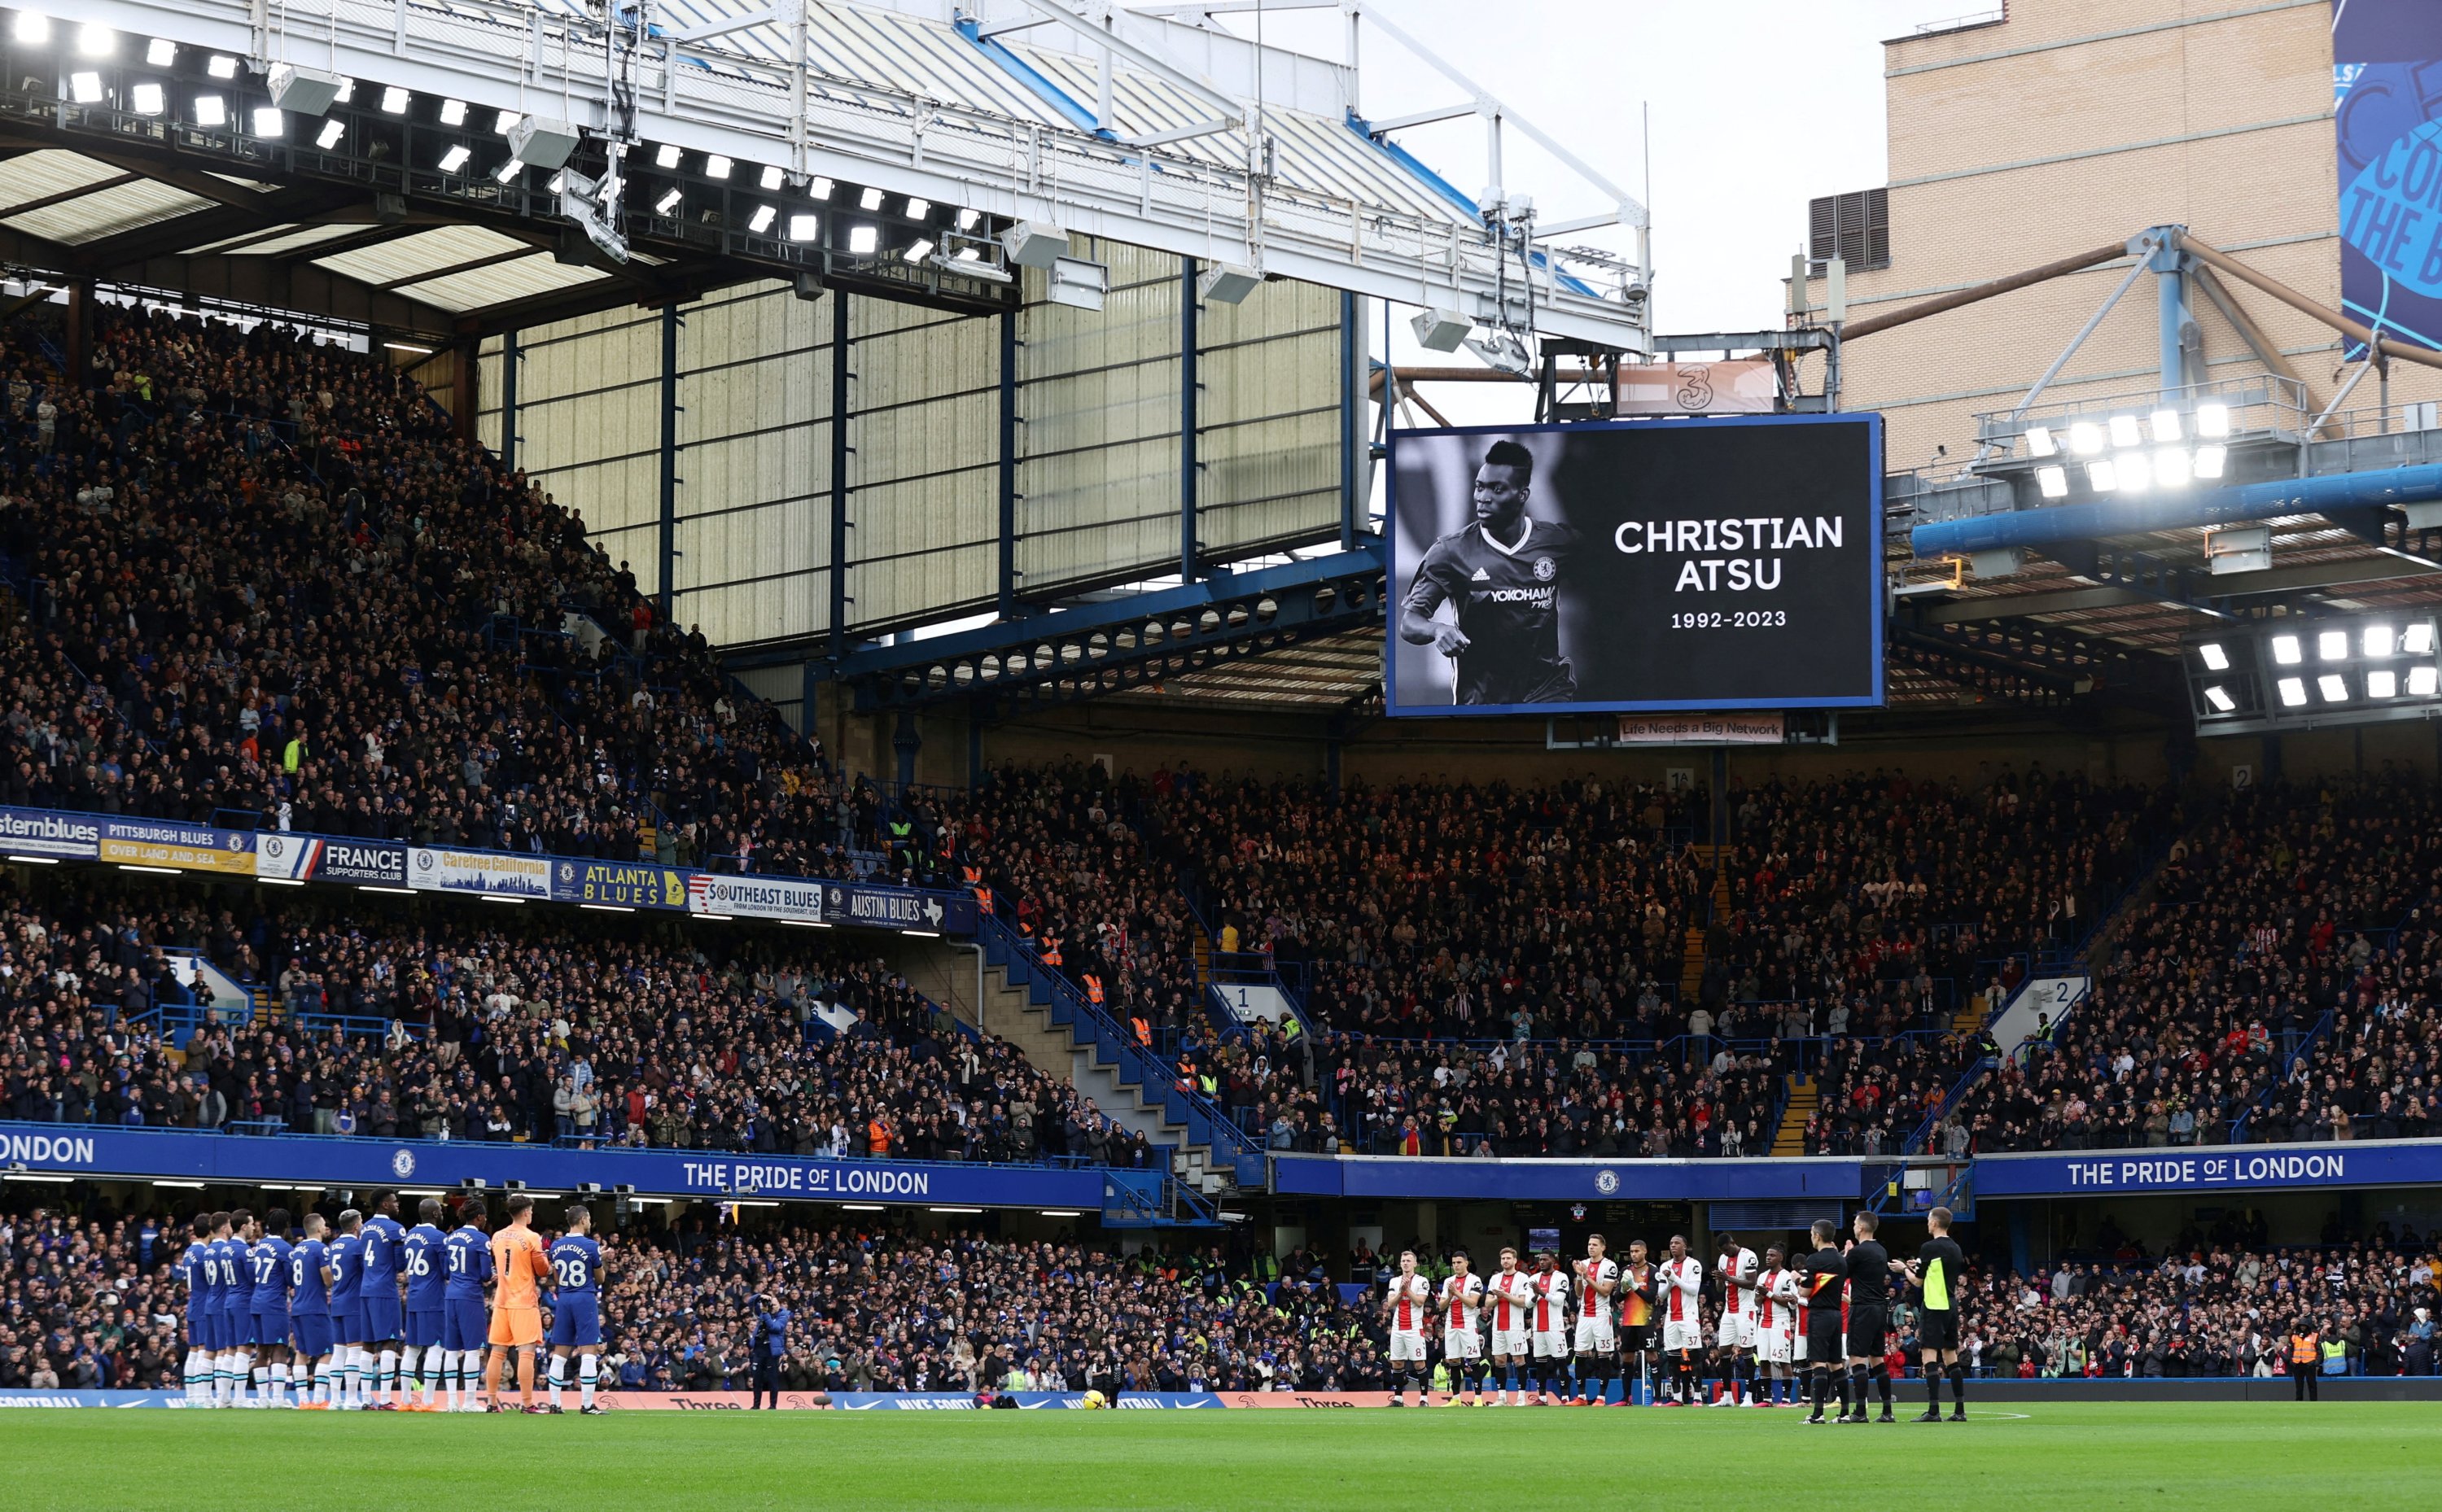 Pandangan umum saat mengheningkan cipta satu menit untuk mengenang Christian Atsu sebelum pertandingan Chelsea-Southampton EPL di Stamford Bridge, London, Inggris, 18 Februari 2023. (Foto Reuters)